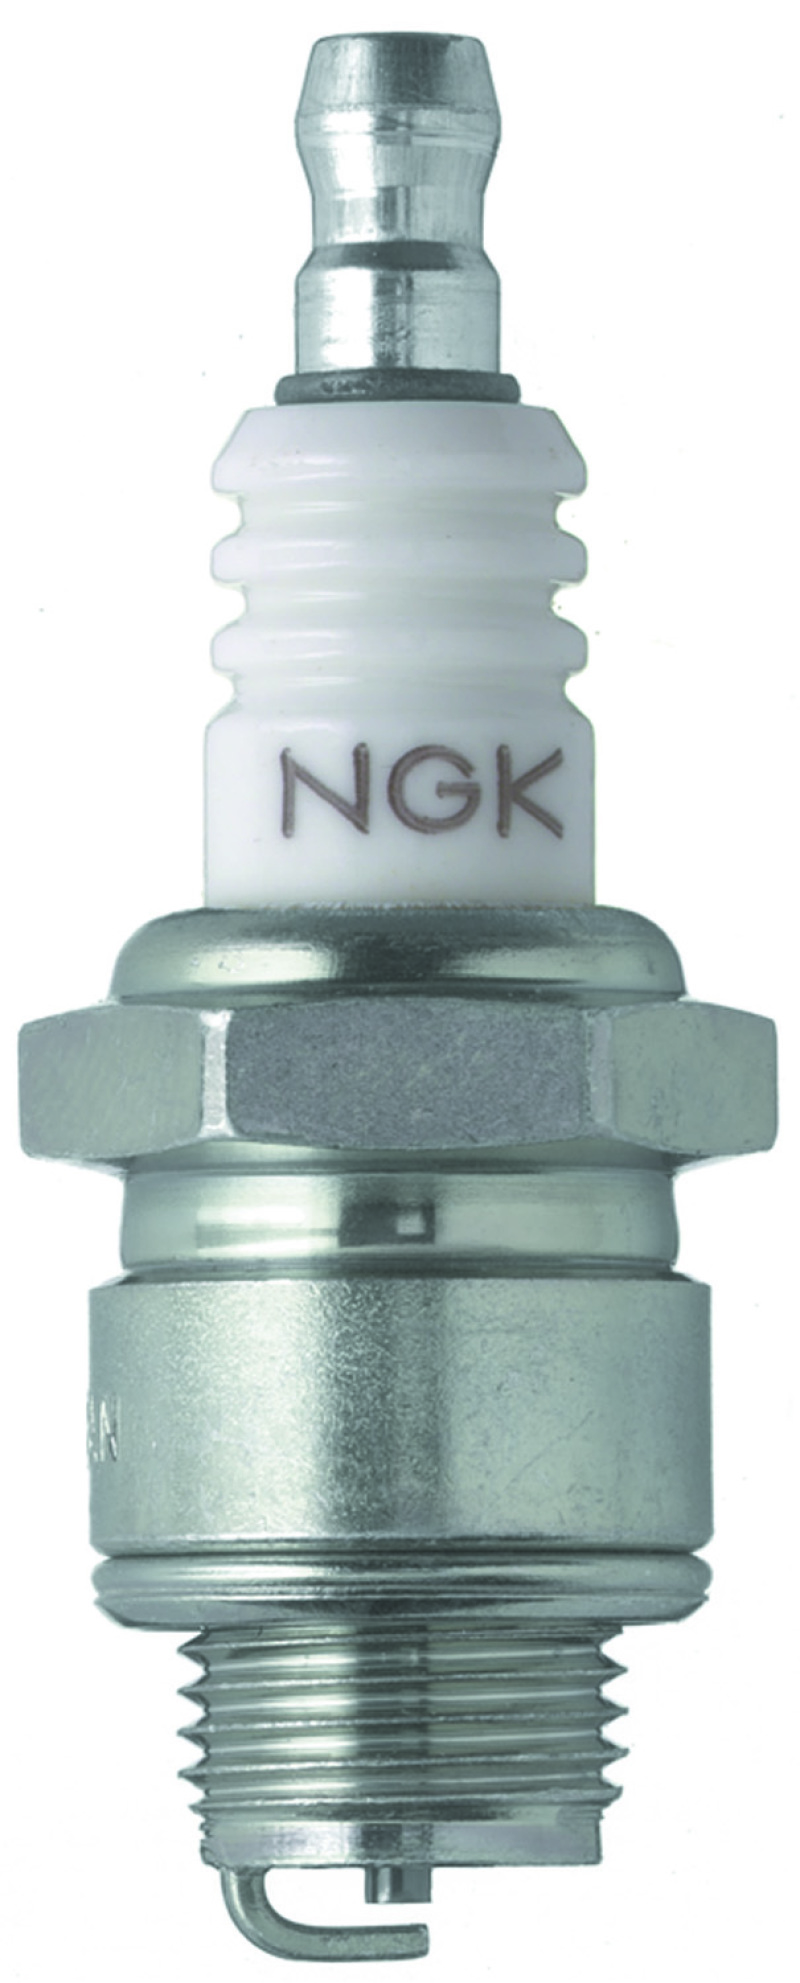 NGK BLYB Spark Plug Box of 6 (BR4-LM) - 96834